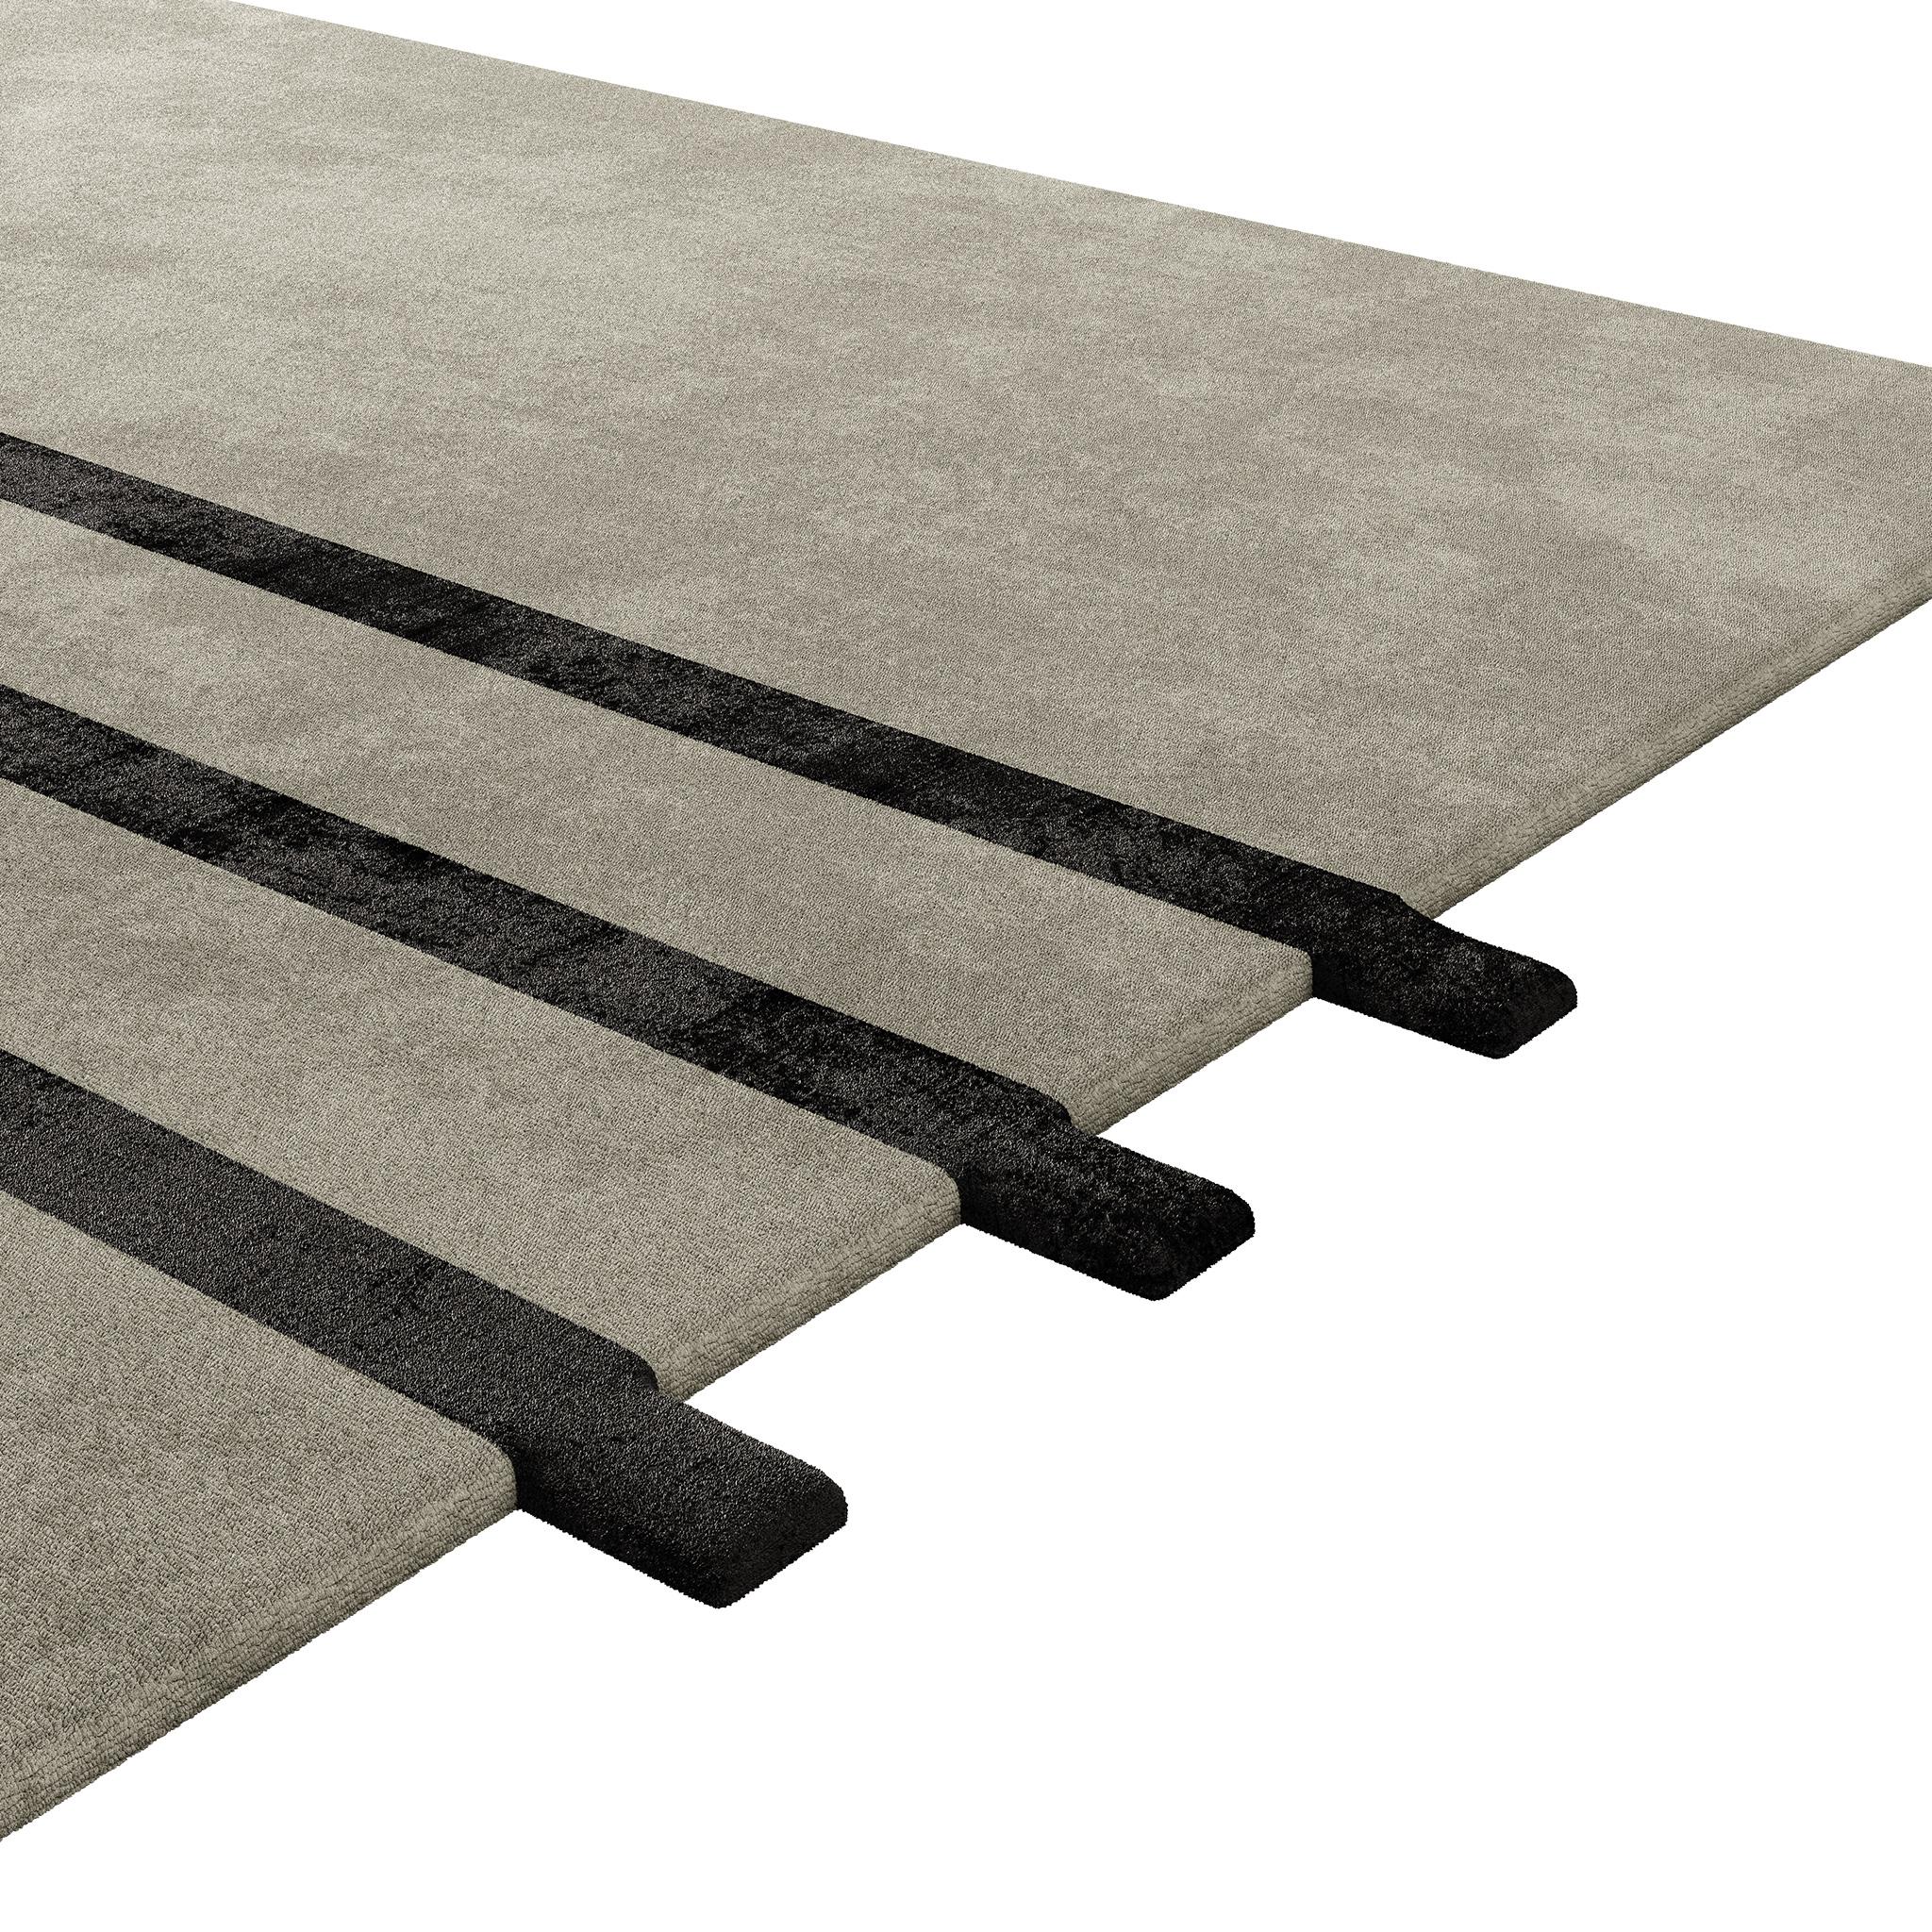 Zeitgenössischer, minimalistischer Teppich aus Lyocell, der in Farbe und Größe vollständig anpassbar ist.

Eine perfekte Lösung für minimalistische Innenräume, mit 3 Streifen.

Mit seinem modernen und minimalistischen Design ist dieser